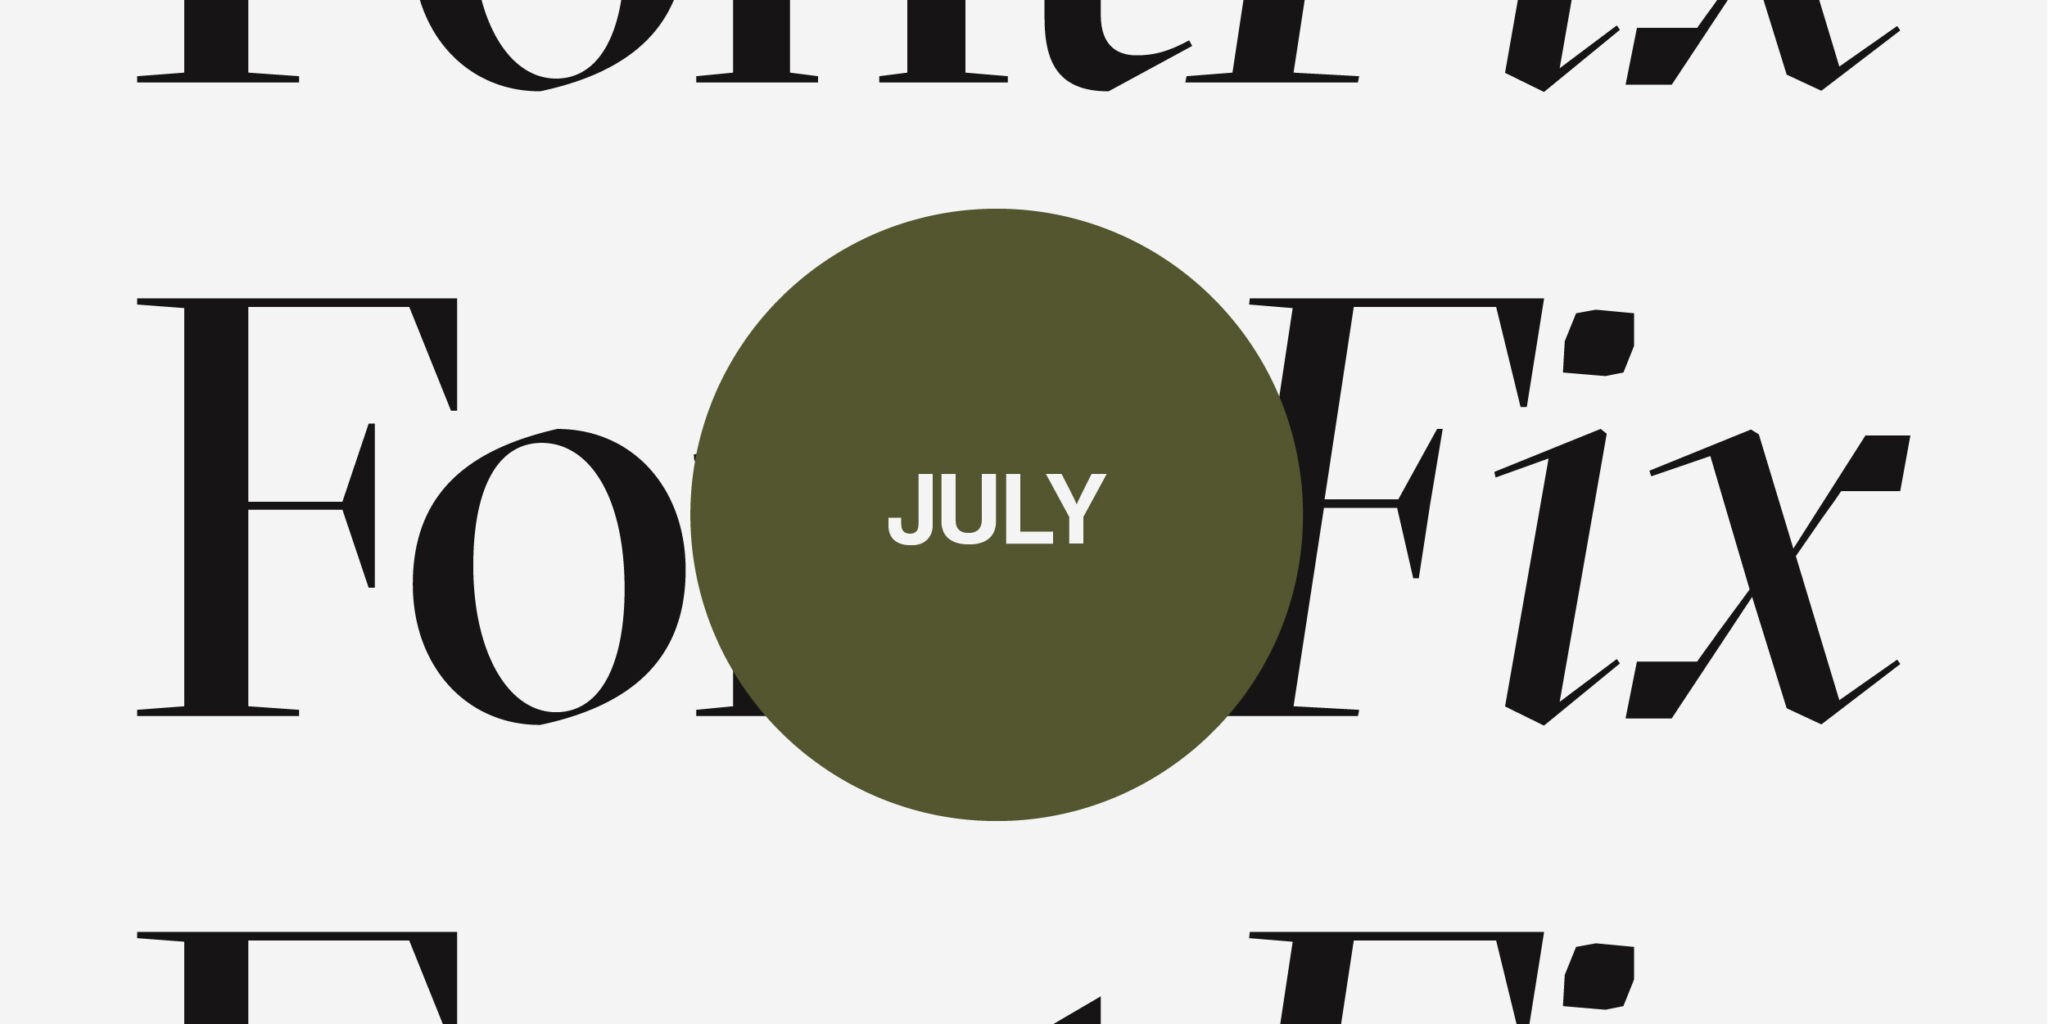 Titelbild für den Blogbeitrag 'Dein font fix für Juli'. Im Hintergrund steht dreimal "Font Fix" und vorne in einem Kreis "July".